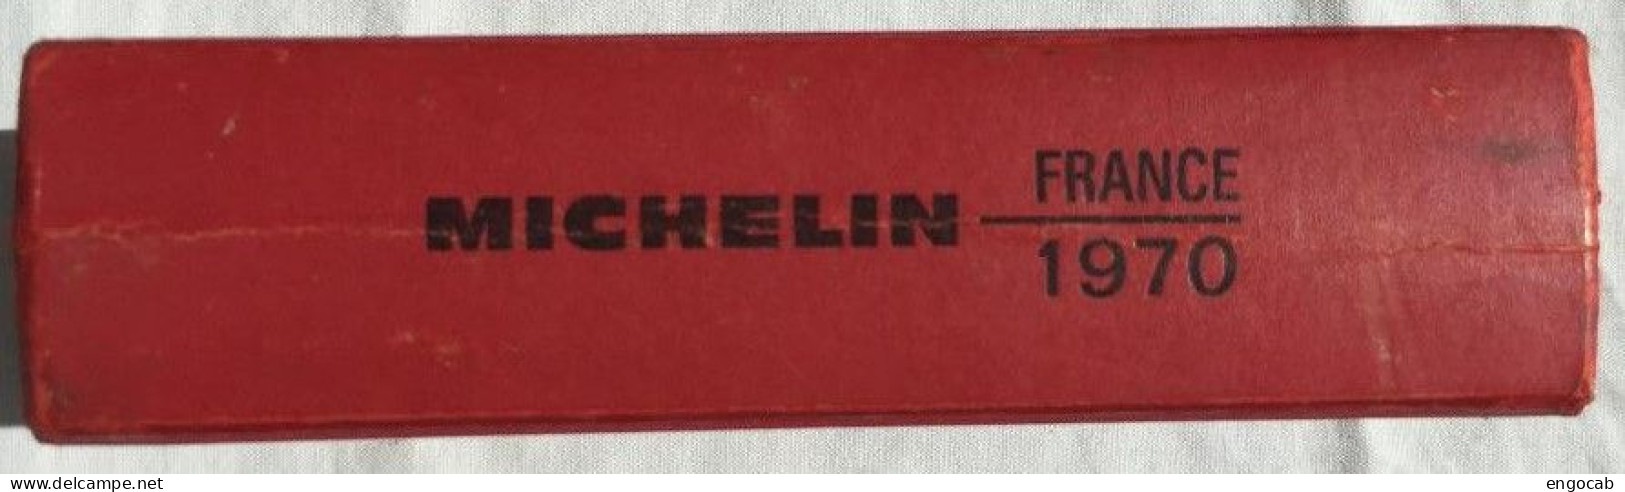 Guide Michelin 1970 D - Michelin-Führer